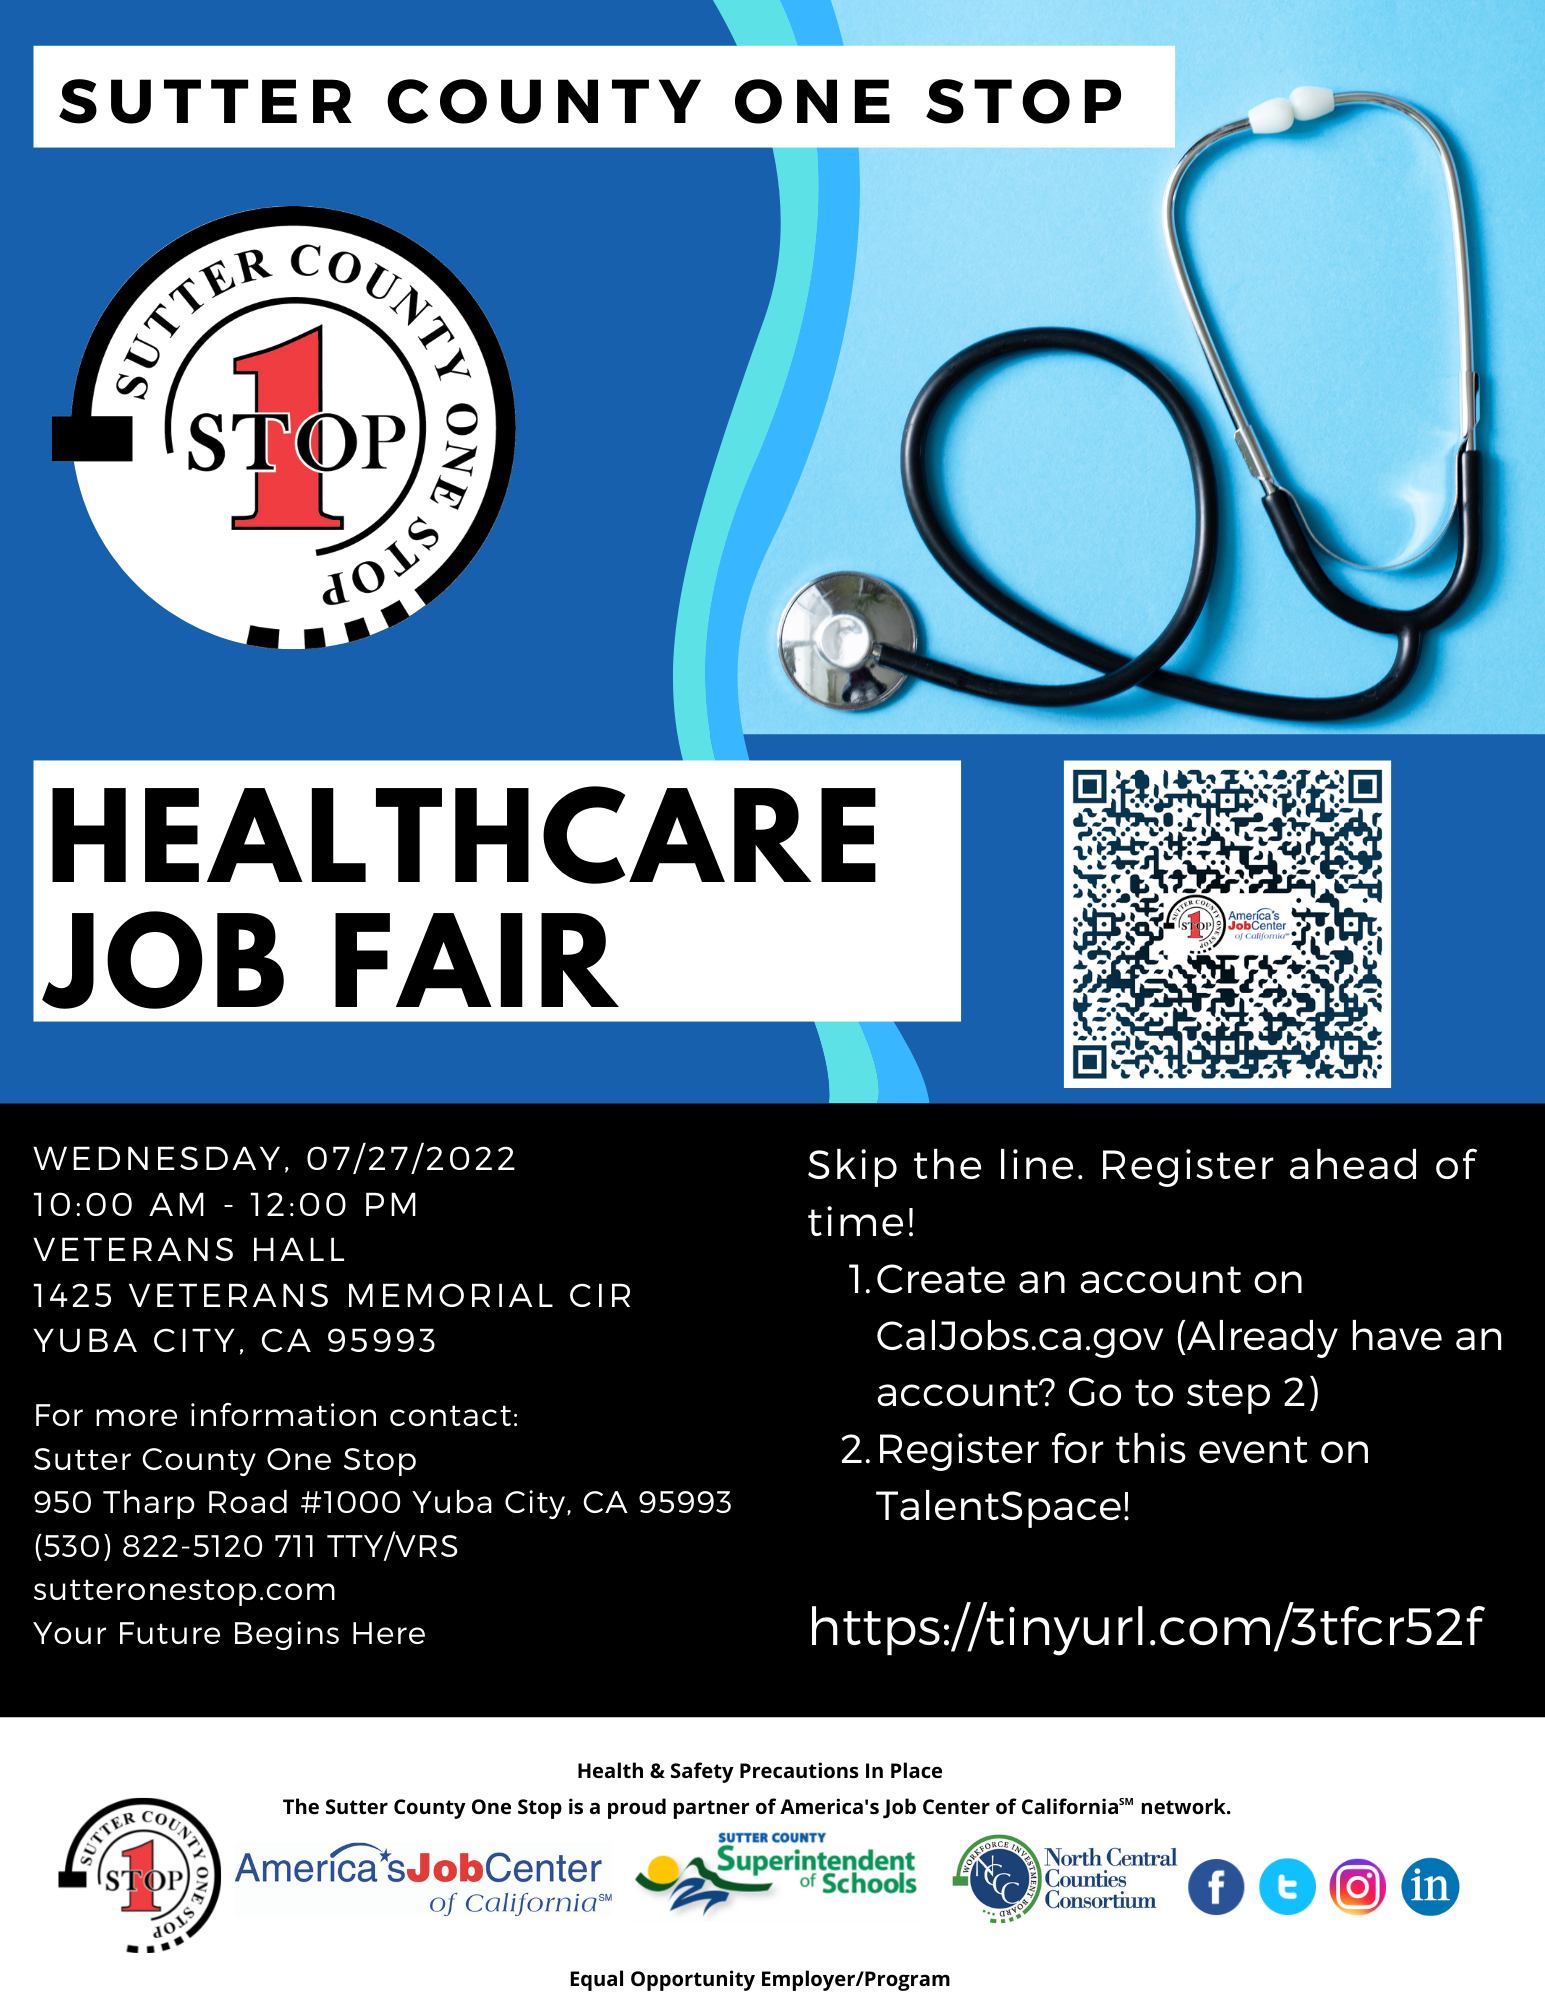 Healthcare Job Fair 7/27/22 10:00am-12:00 @ the Veteran's Hall